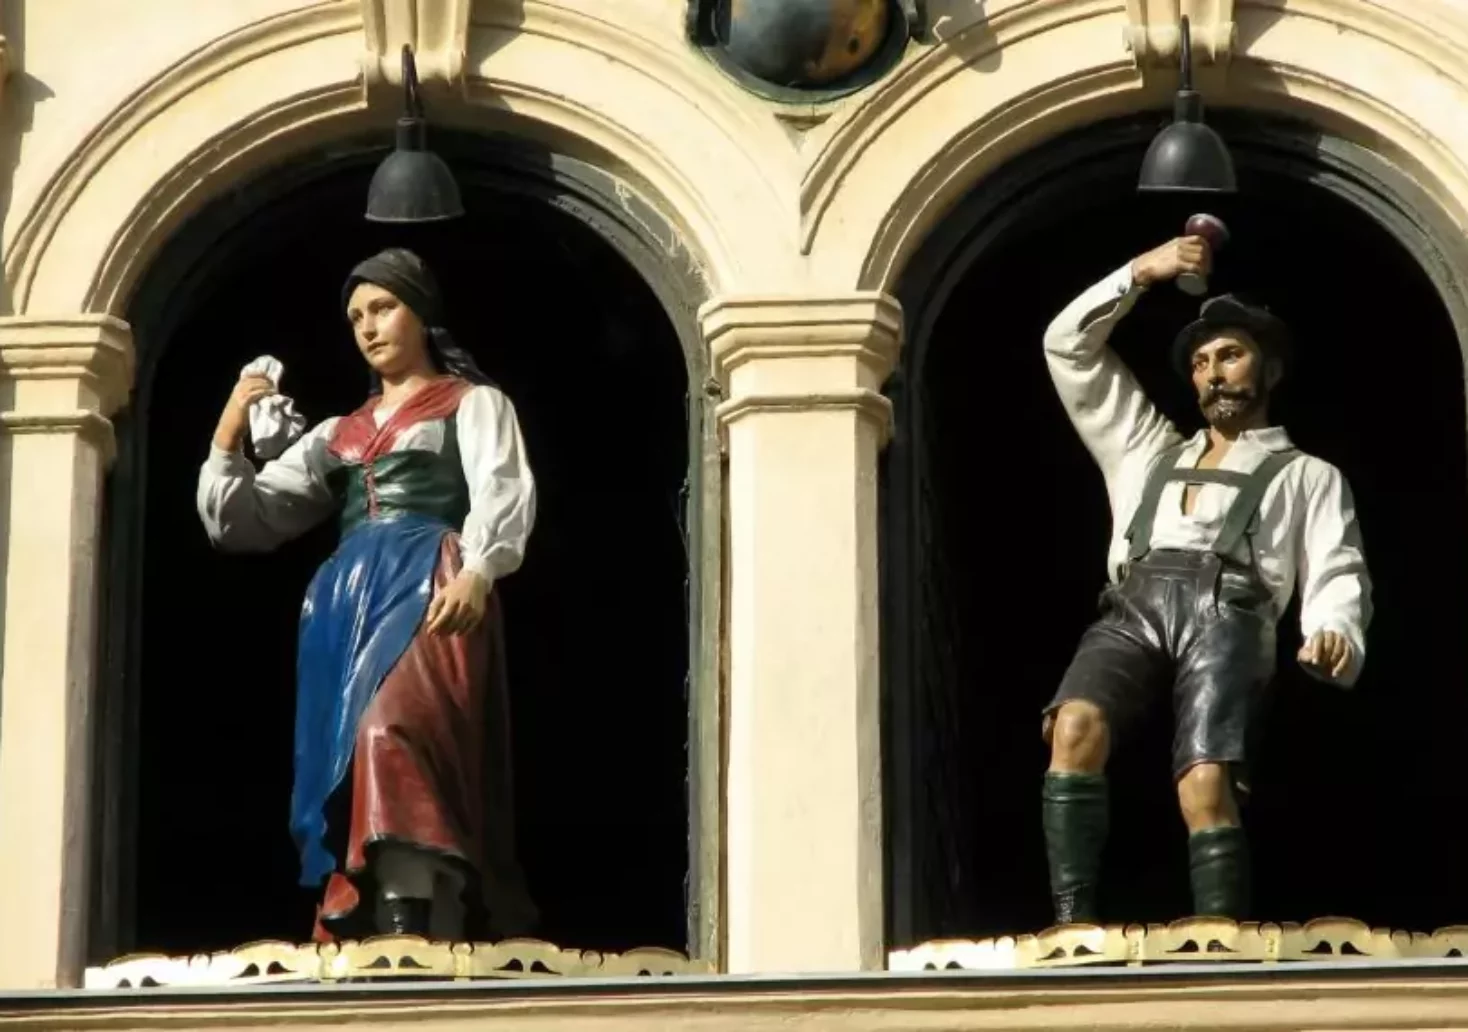 Bild auf 5min.at zeigt das Trachtenpaar des Grazer Glockenspiels